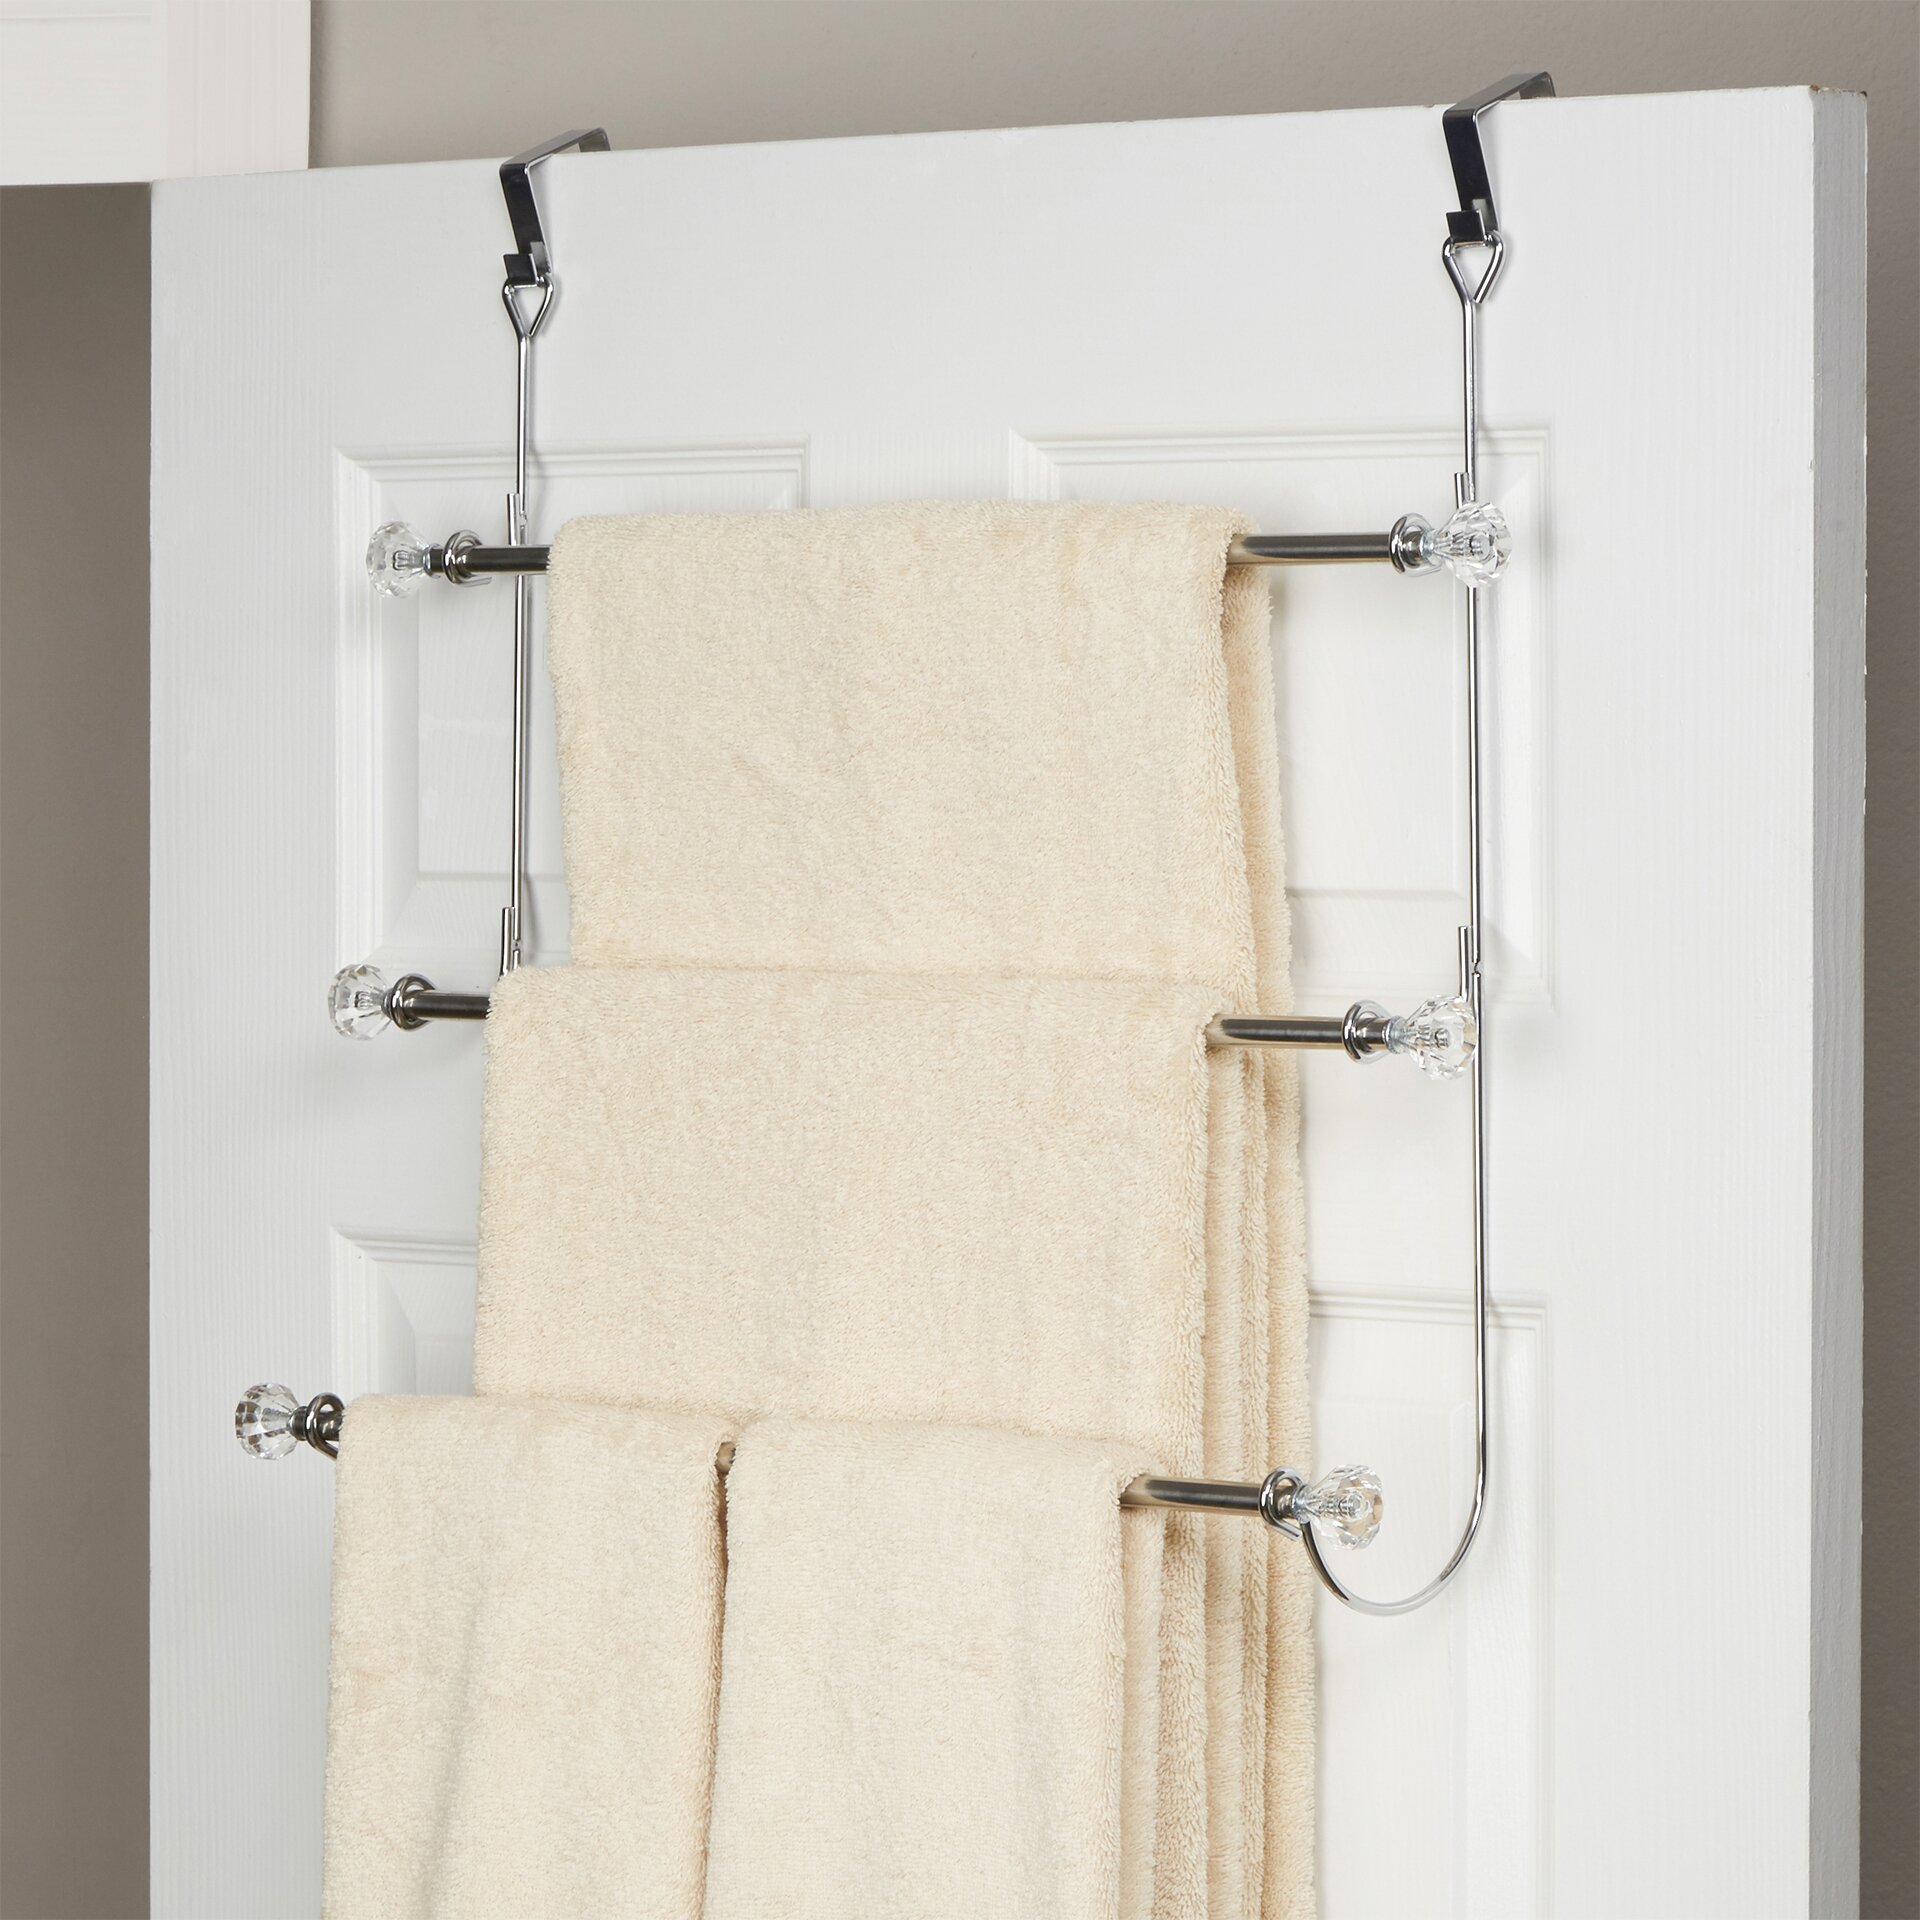 Wayfair Basics Wayfair Basics 3 Tier Over the Door Towel Rack & Reviews